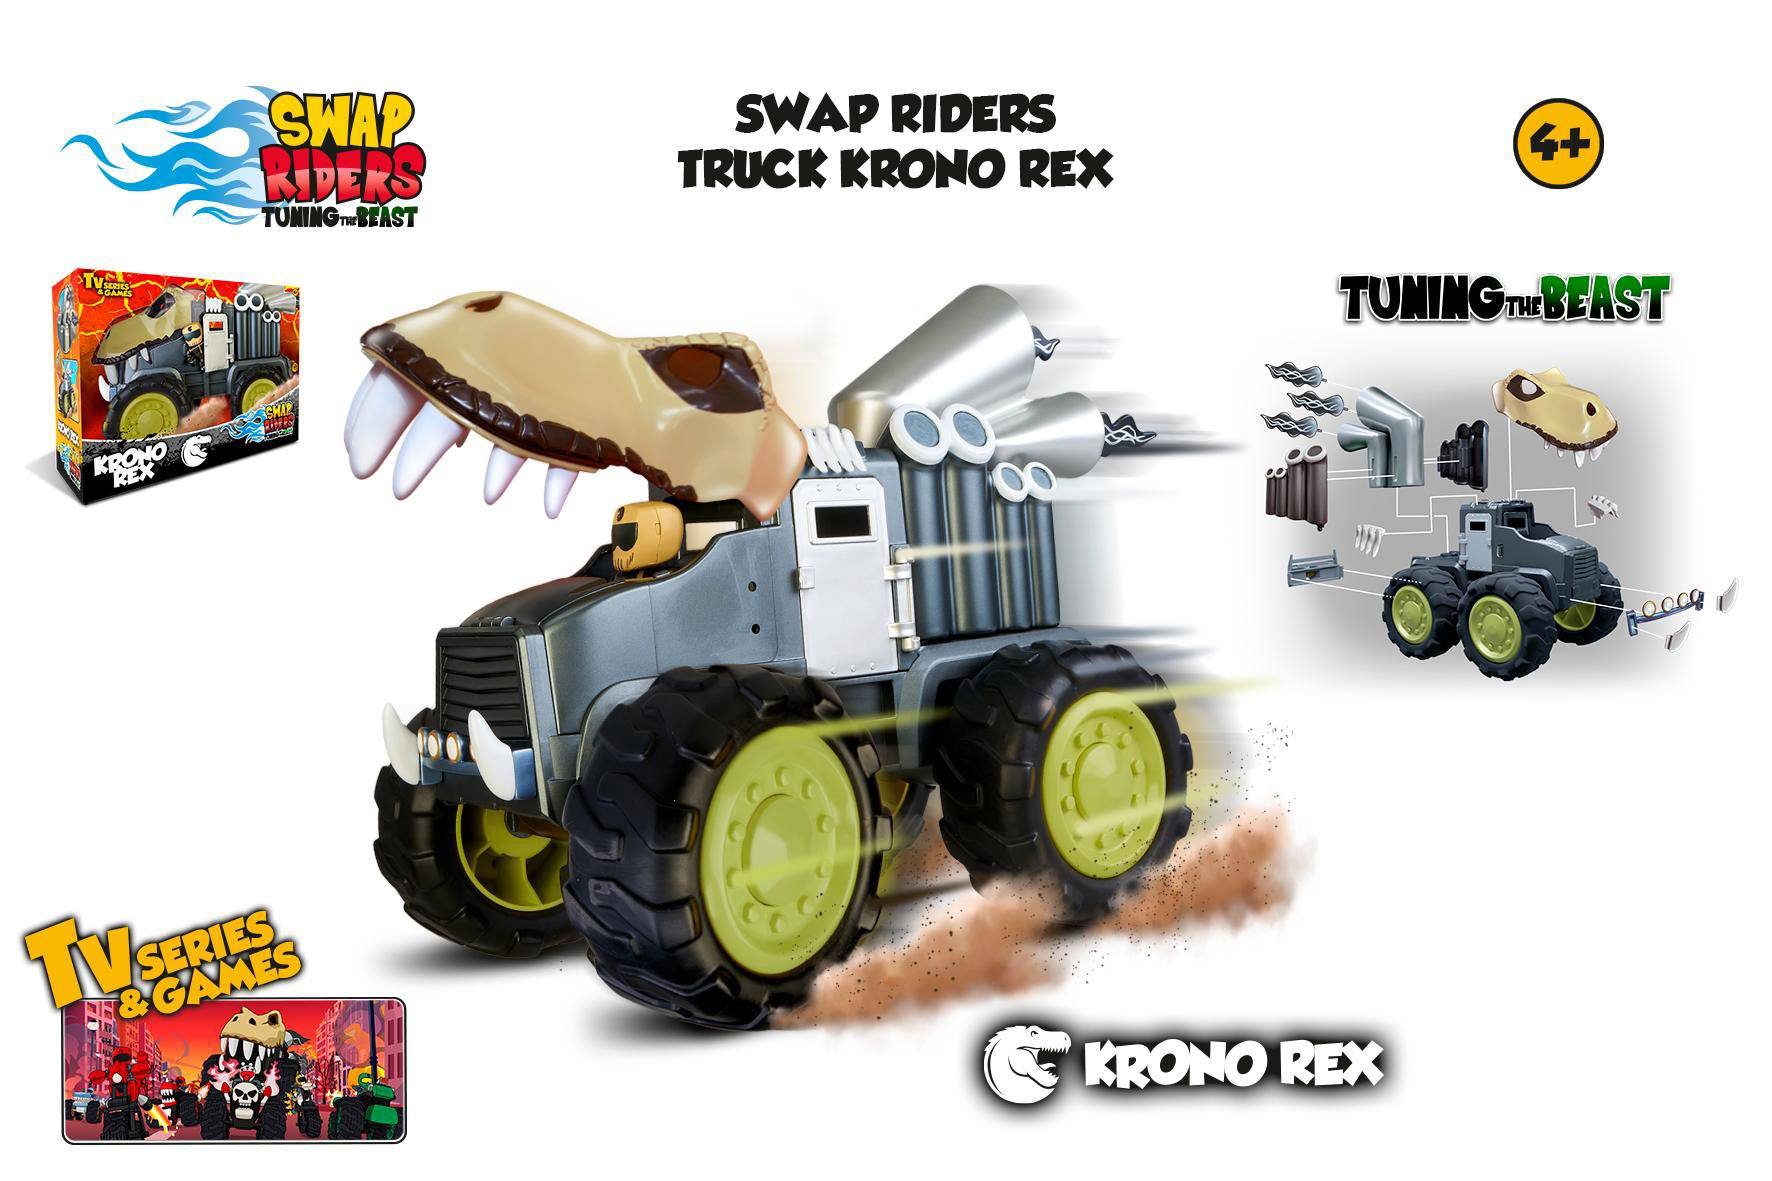 swap riders truck krono rex  (famosa - wap00000)